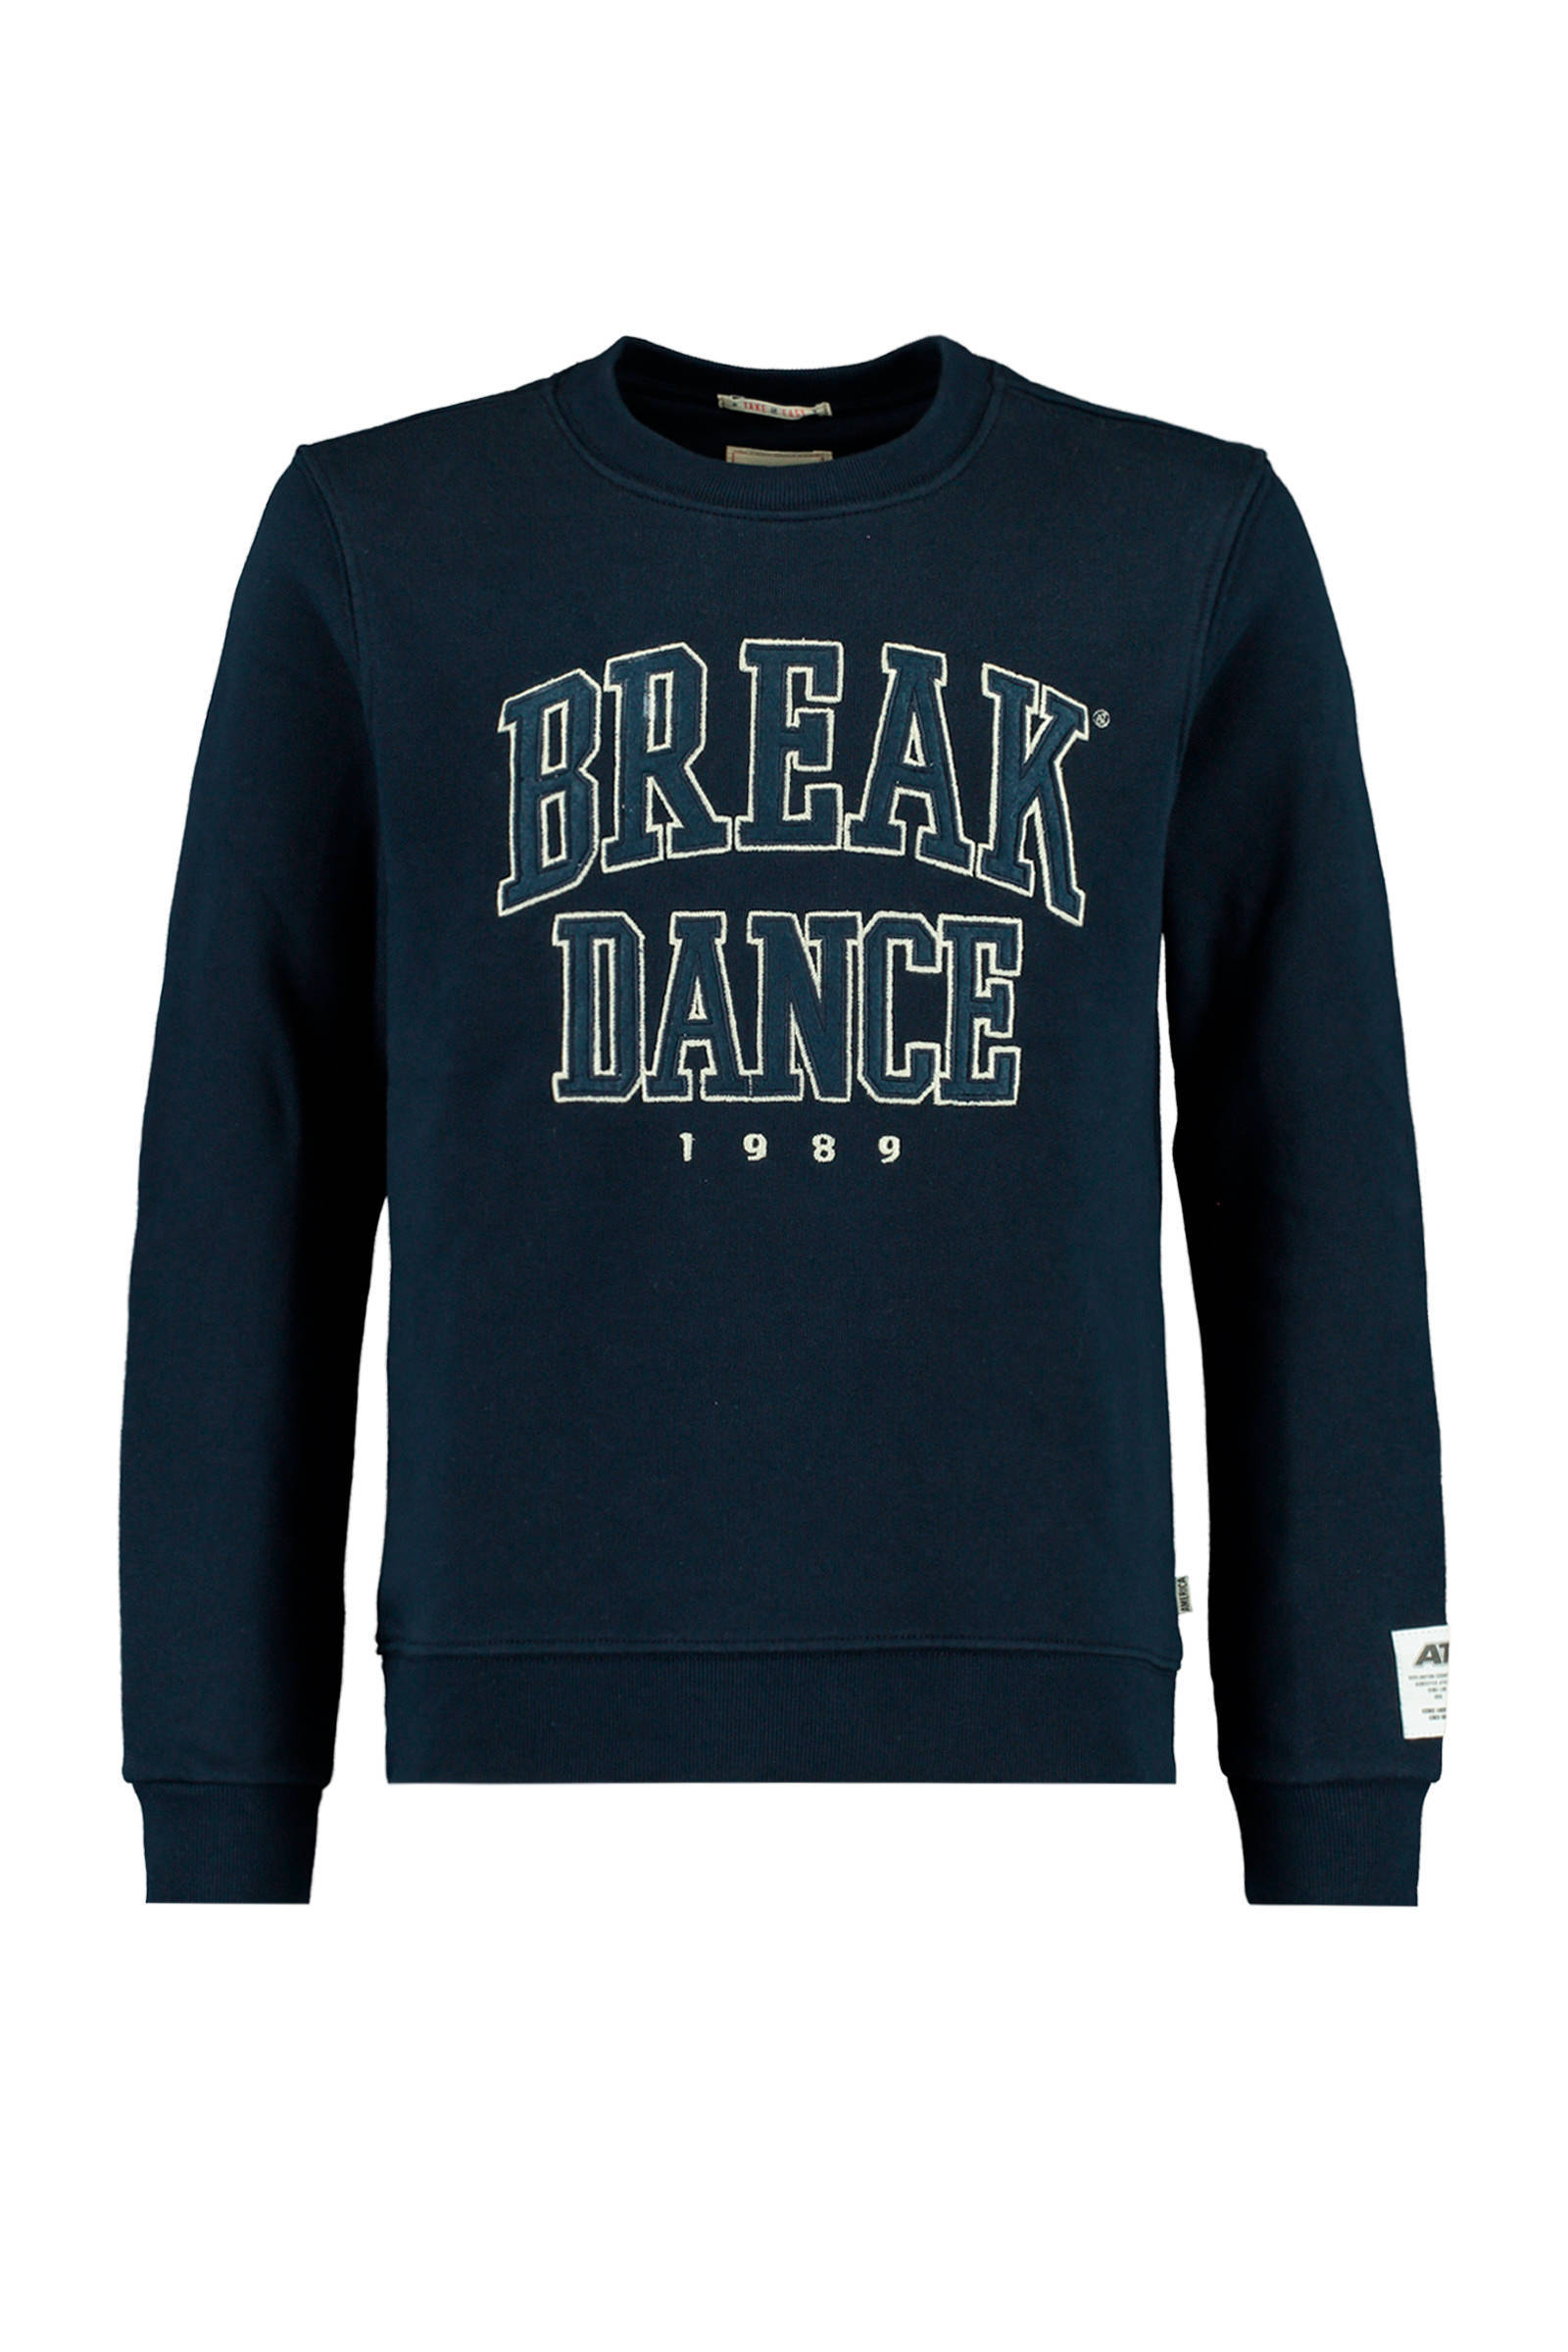 America Today Junior sweater Sal met tekst donkerblauw/ecru online kopen